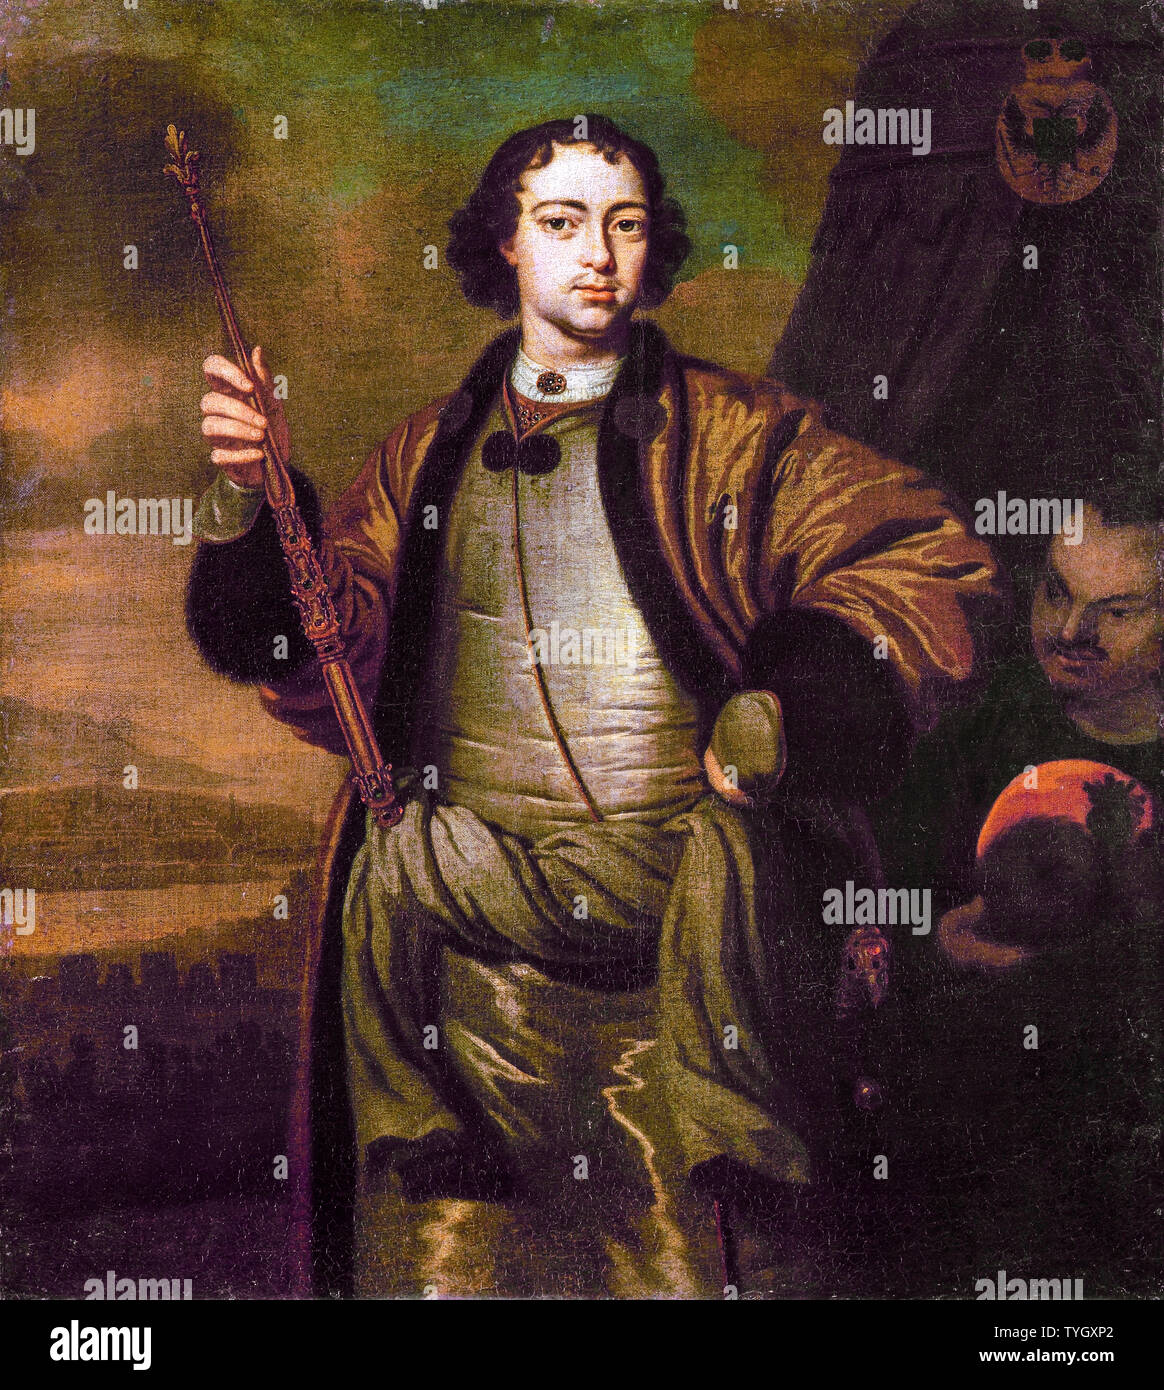 Pieter van der Werff , Peter I of Russia, 1672-1725, portrait painting, 1690-1699 Stock Photo